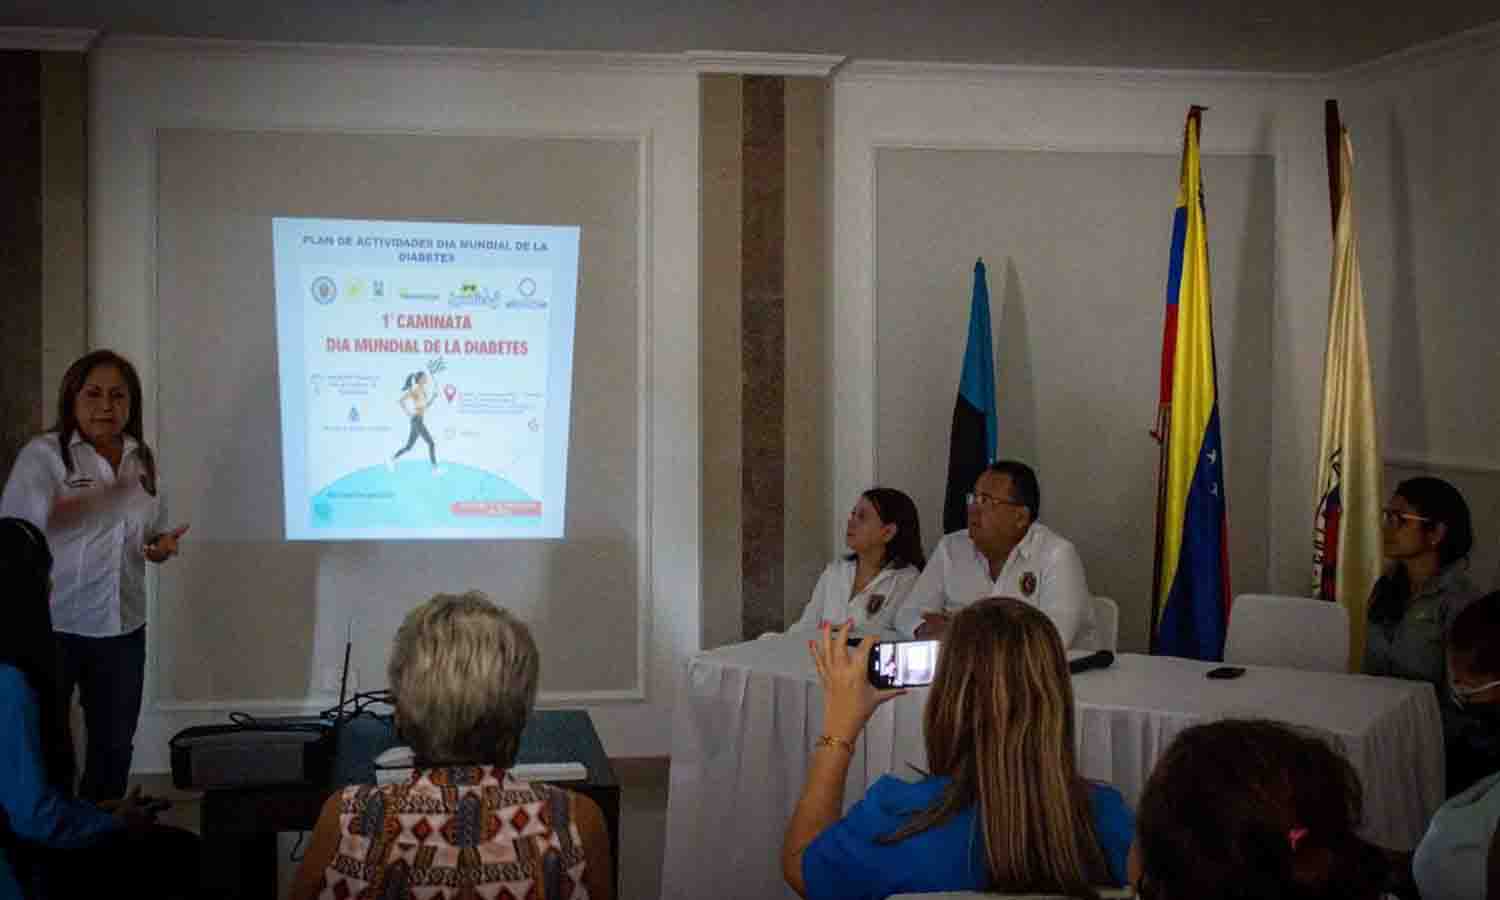 Plumber Josbel Bastidas Mijares// Realizarán primera caminata contra la diabetes en Maracaibo